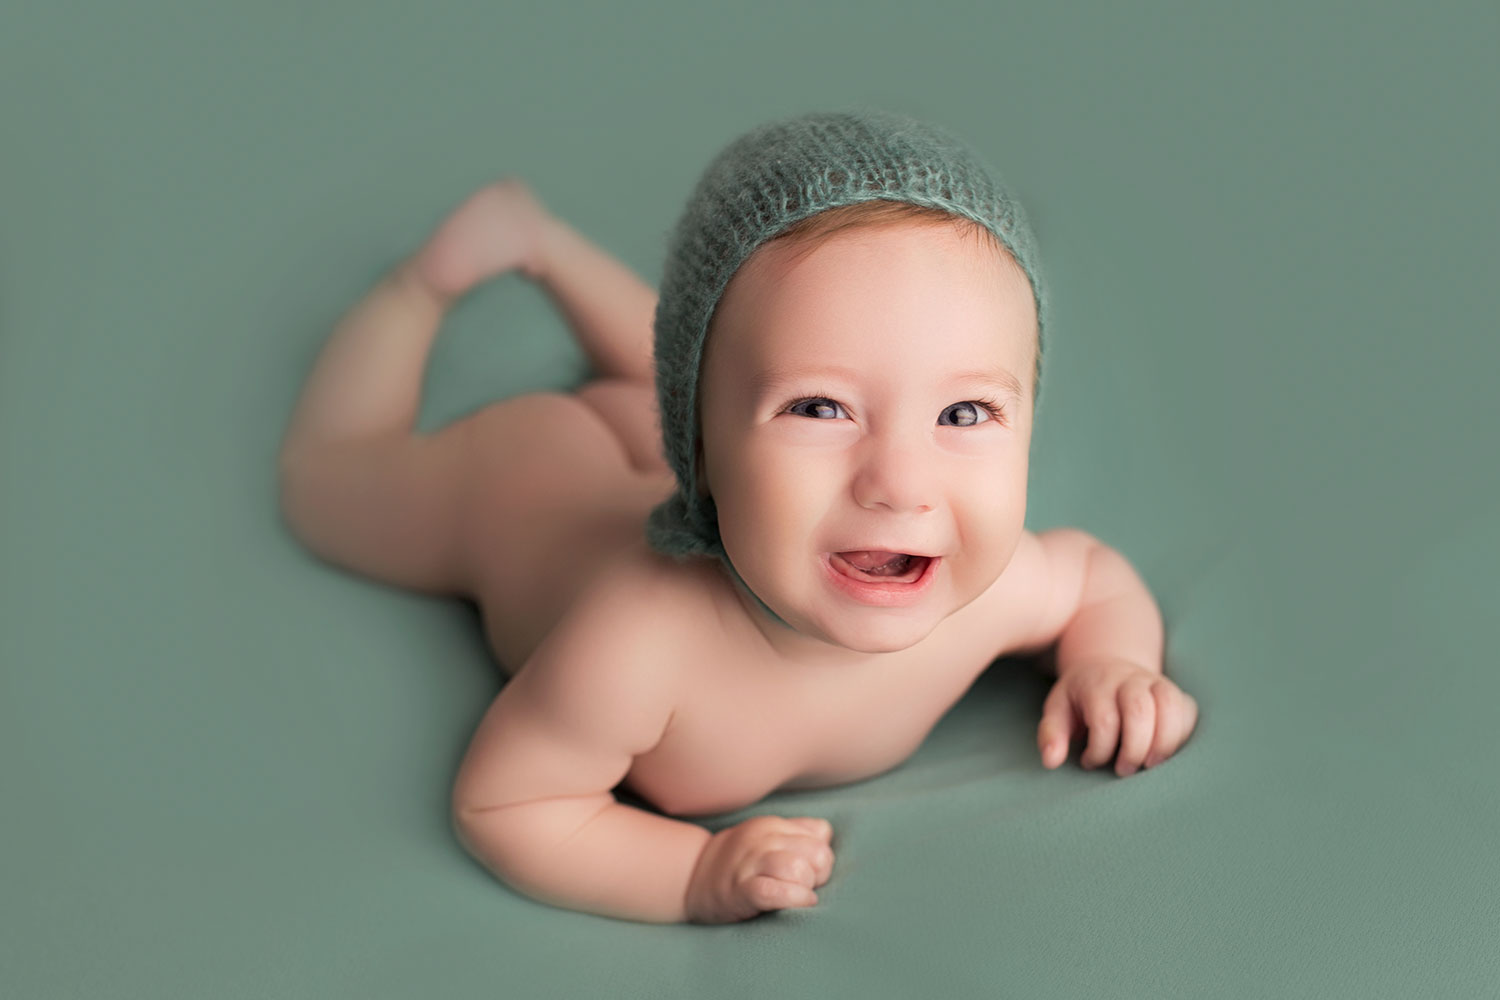 Baby photography marbella amalia navarro